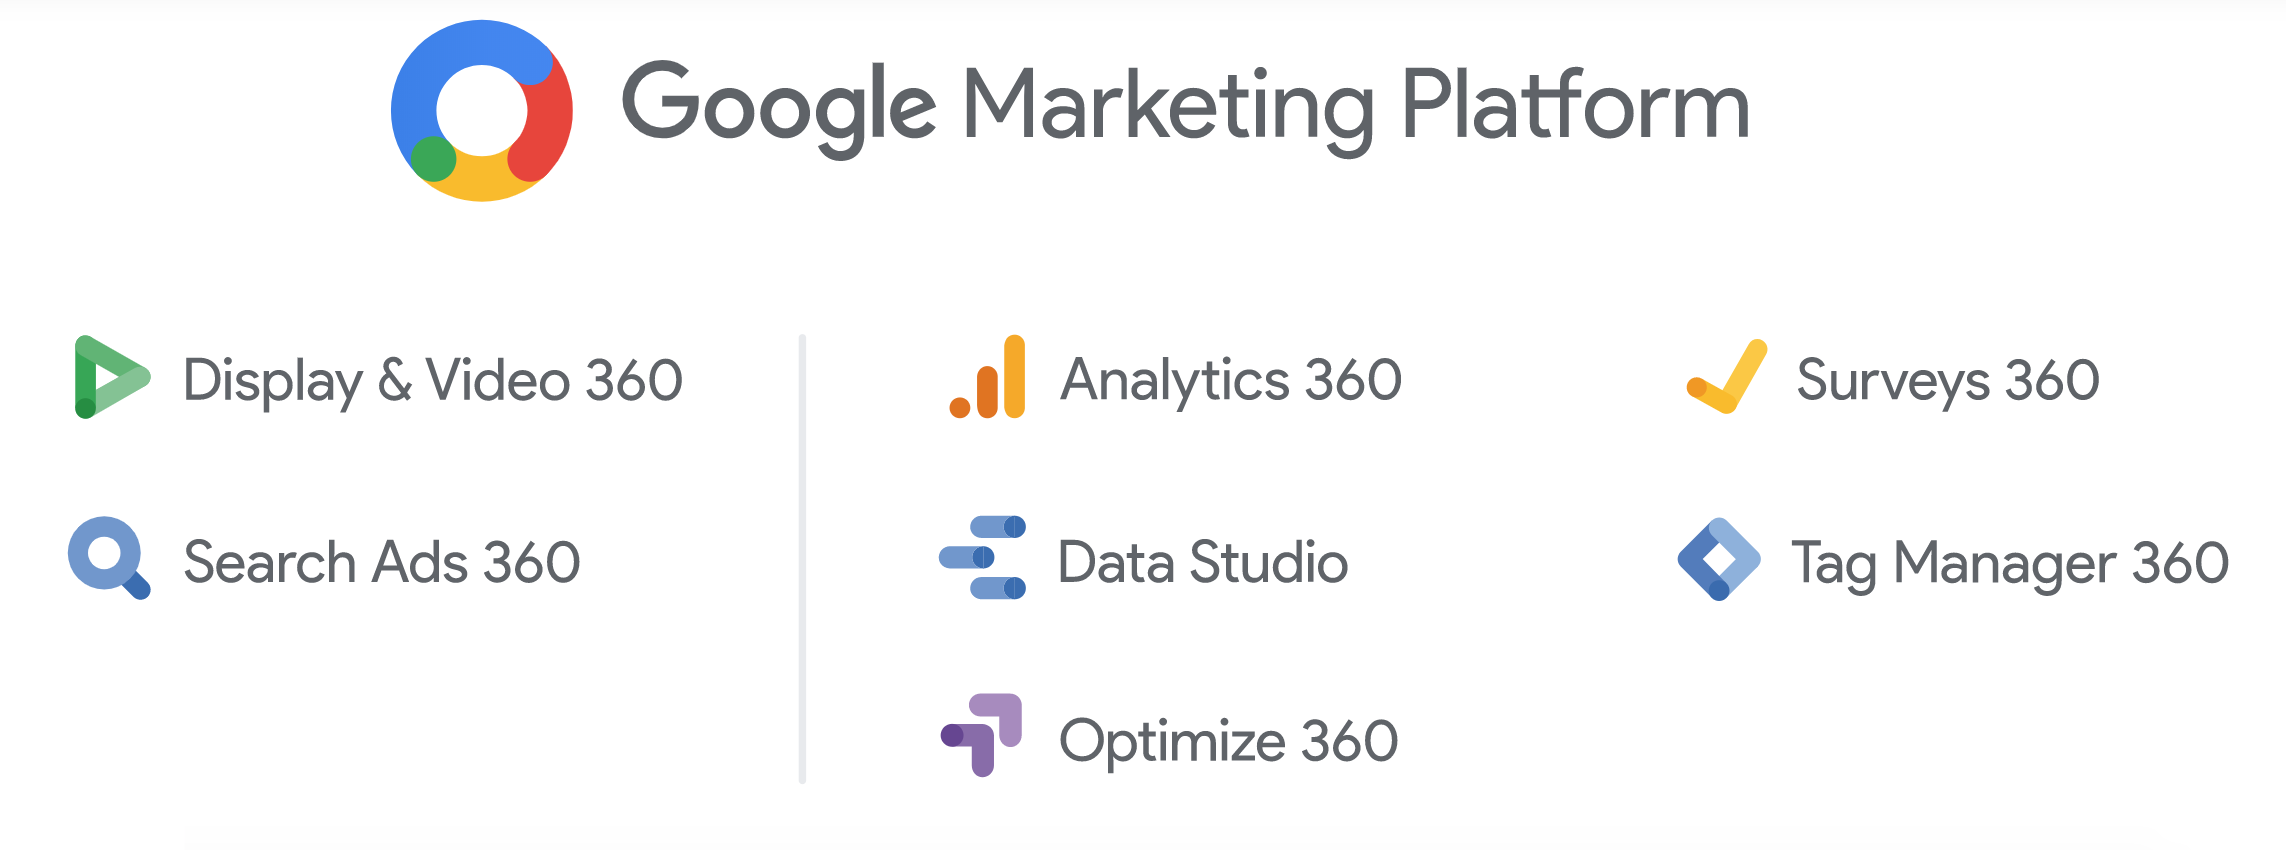 Features der Google Marketing Platform, © Google